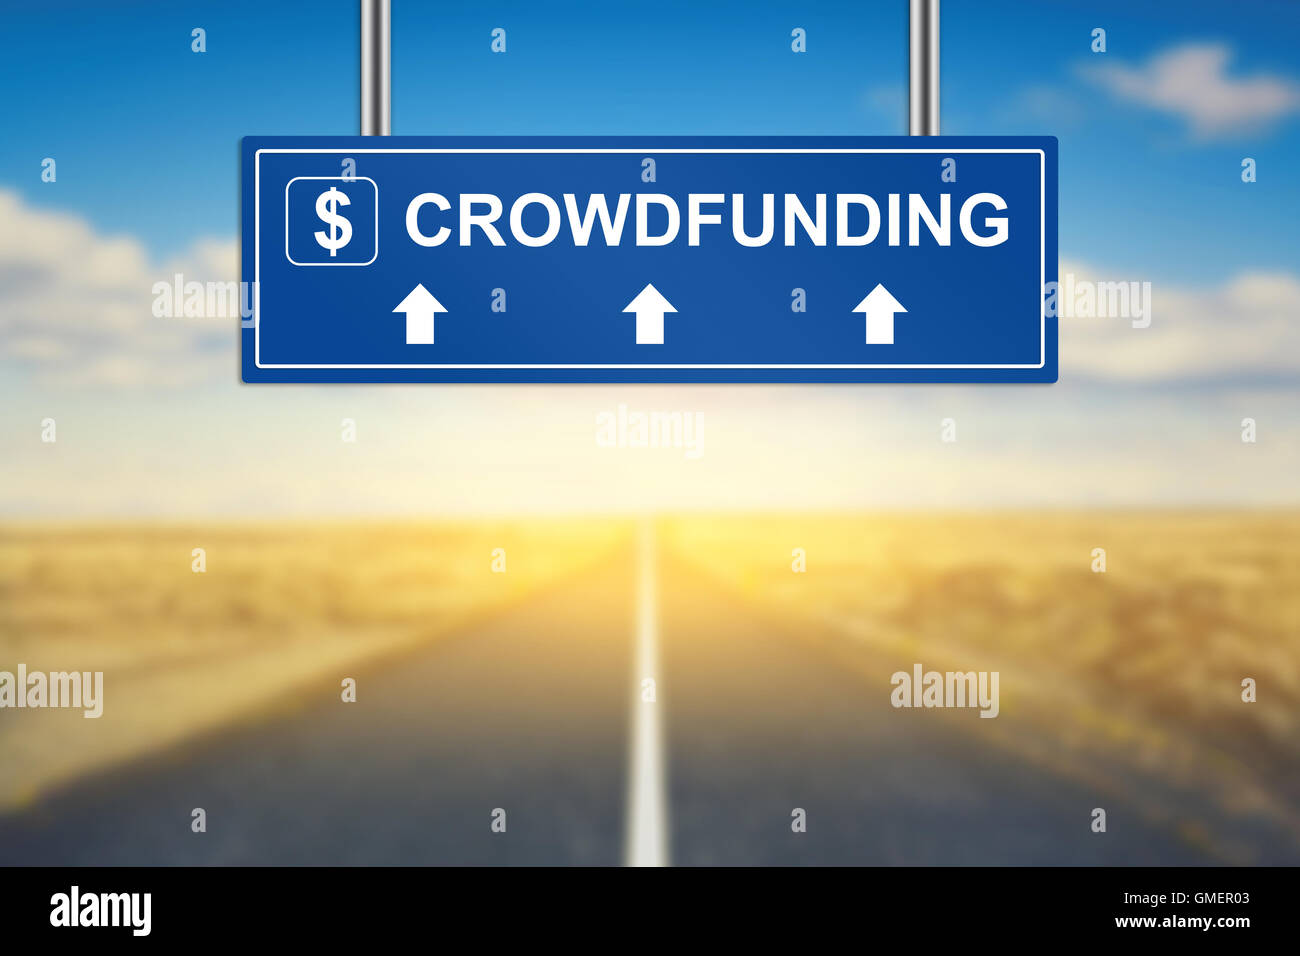 Mots crowdfunding sur blue road sign avec arrière-plan flou Banque D'Images